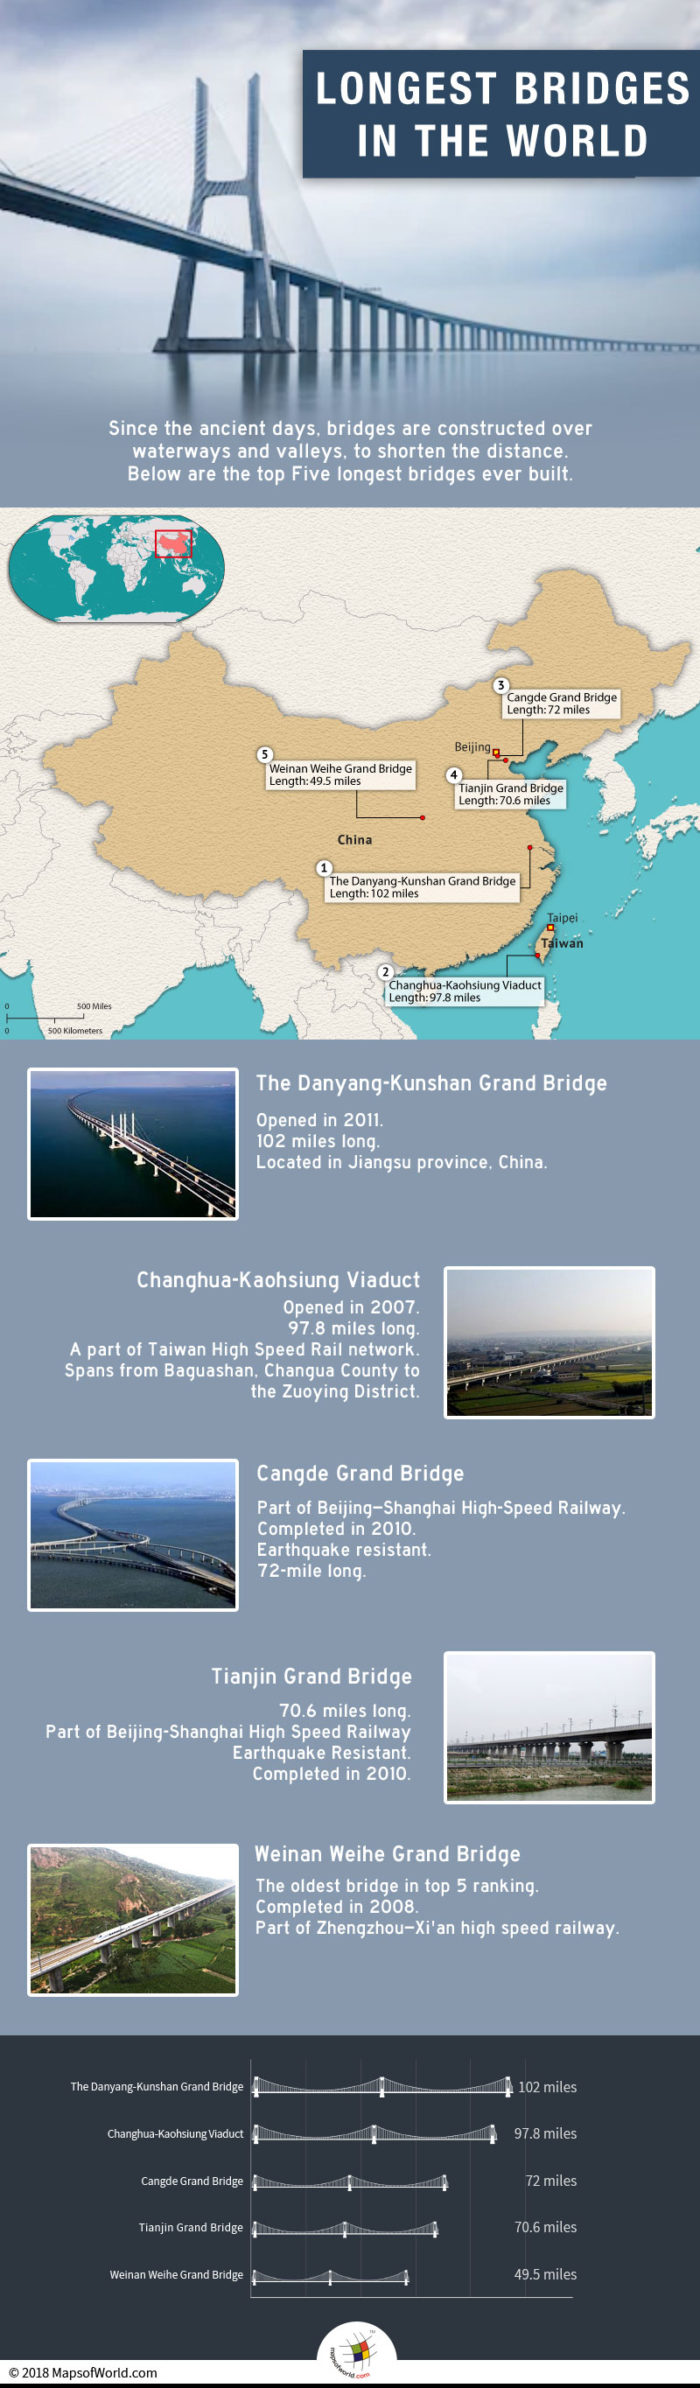 Danyang-Kunshan Grand Bridge is The Longest Bridge in the World